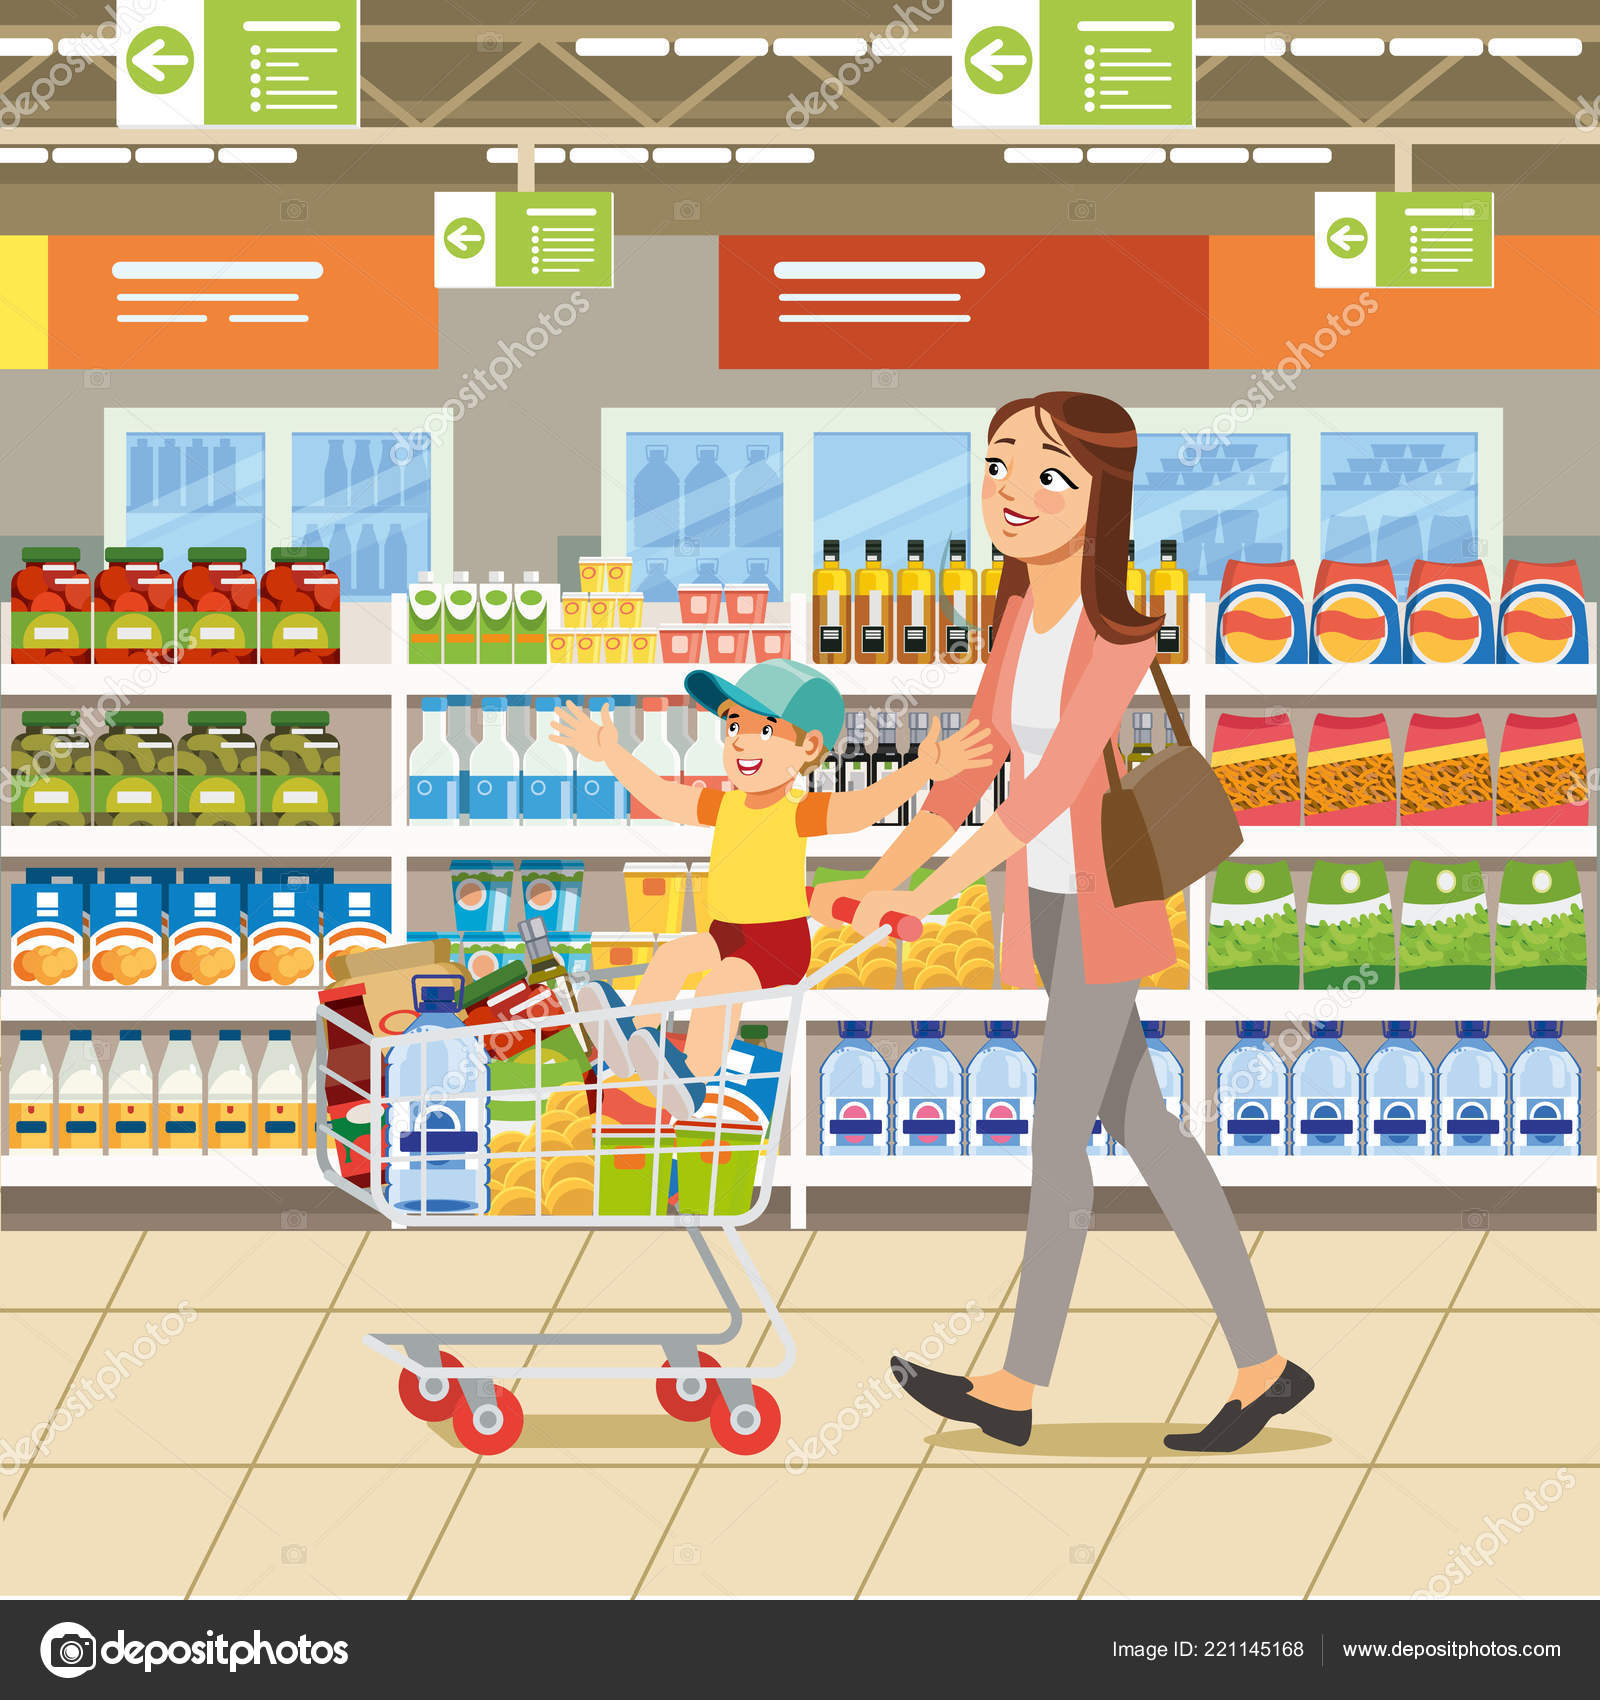 Supermercado Cartoon - Homem empurrando o carrinho na ilustração de